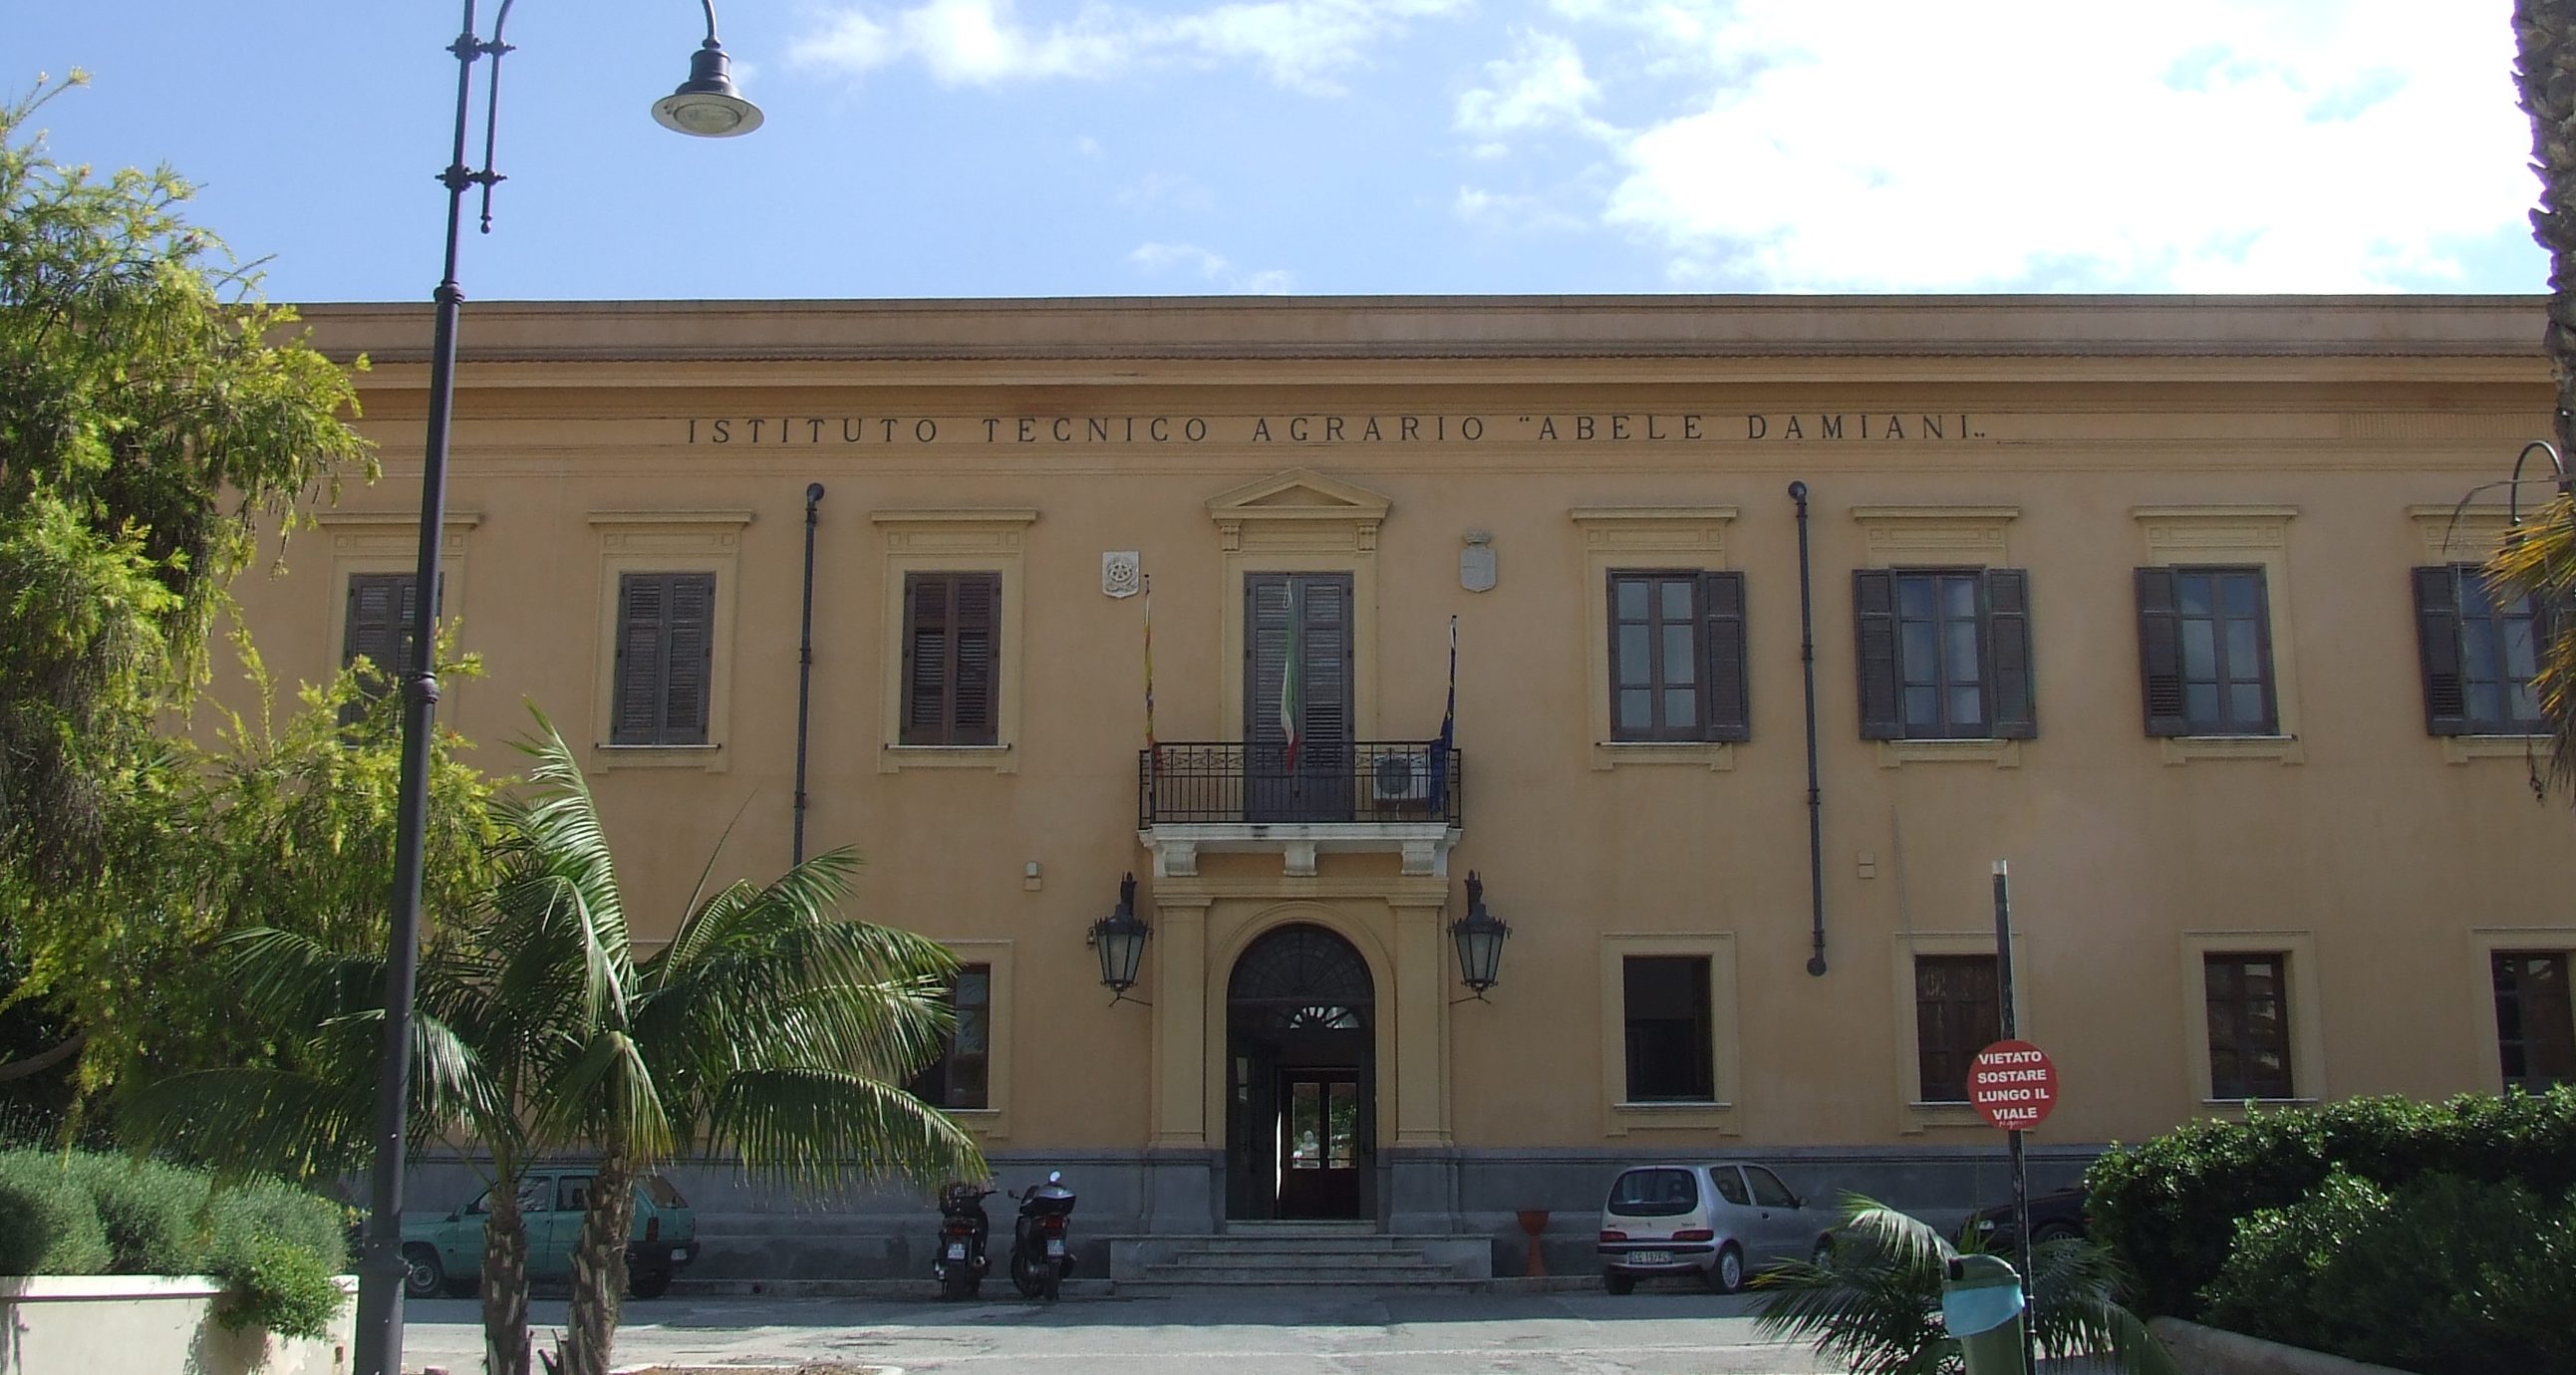 Istituto Tecnico Agrario "Abele Damiani"